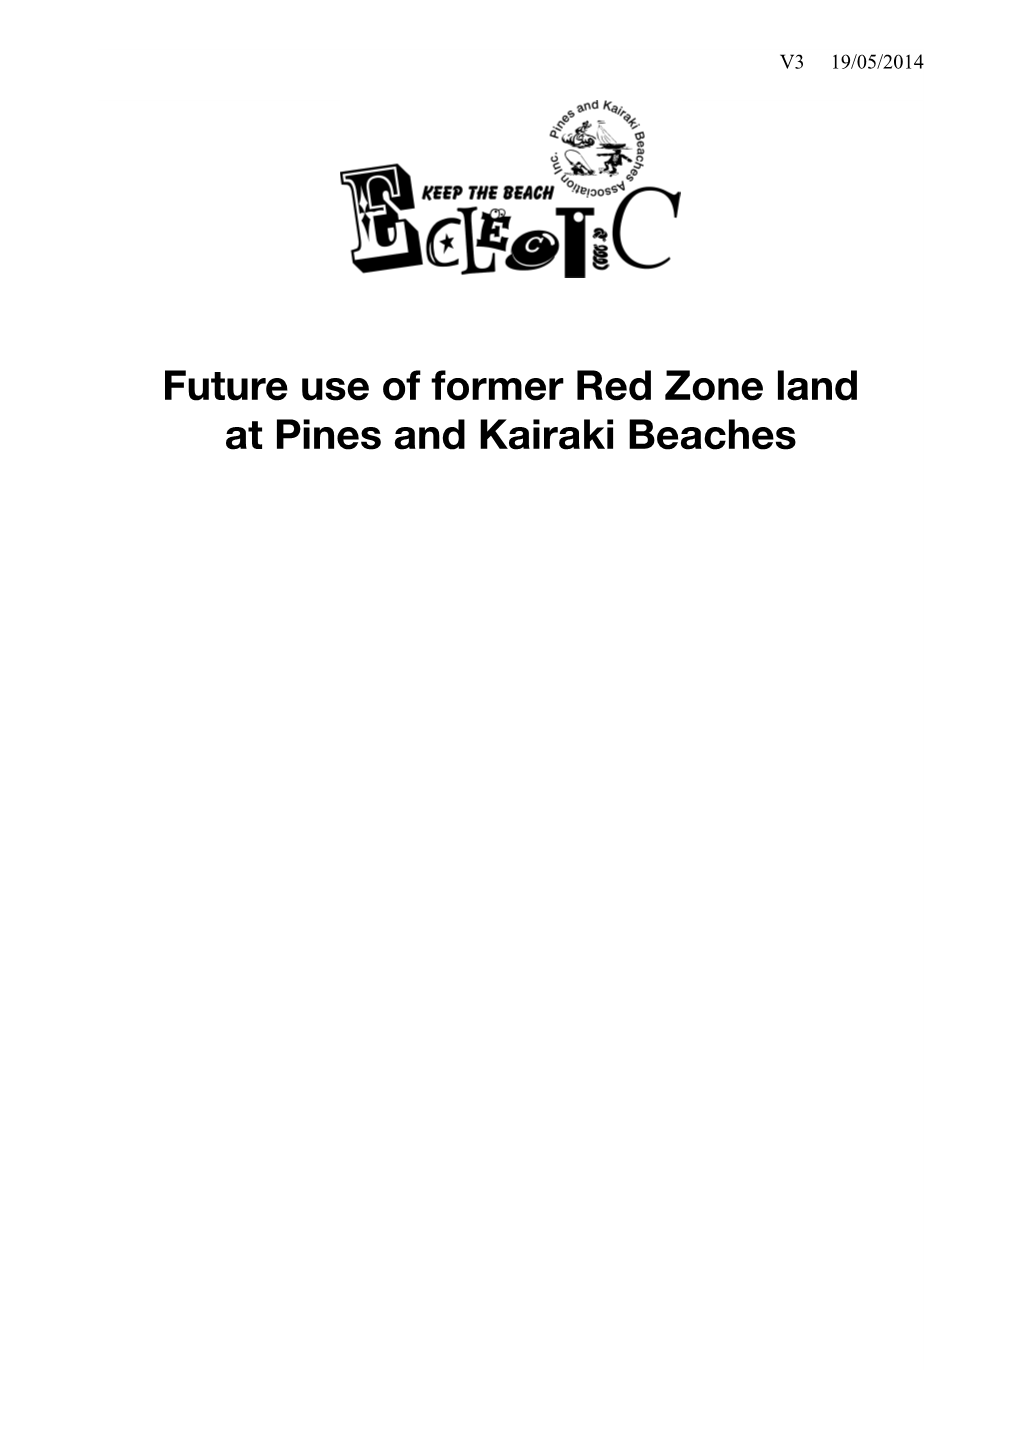 Red Zone Future Use Pines and Kairaki Beaches